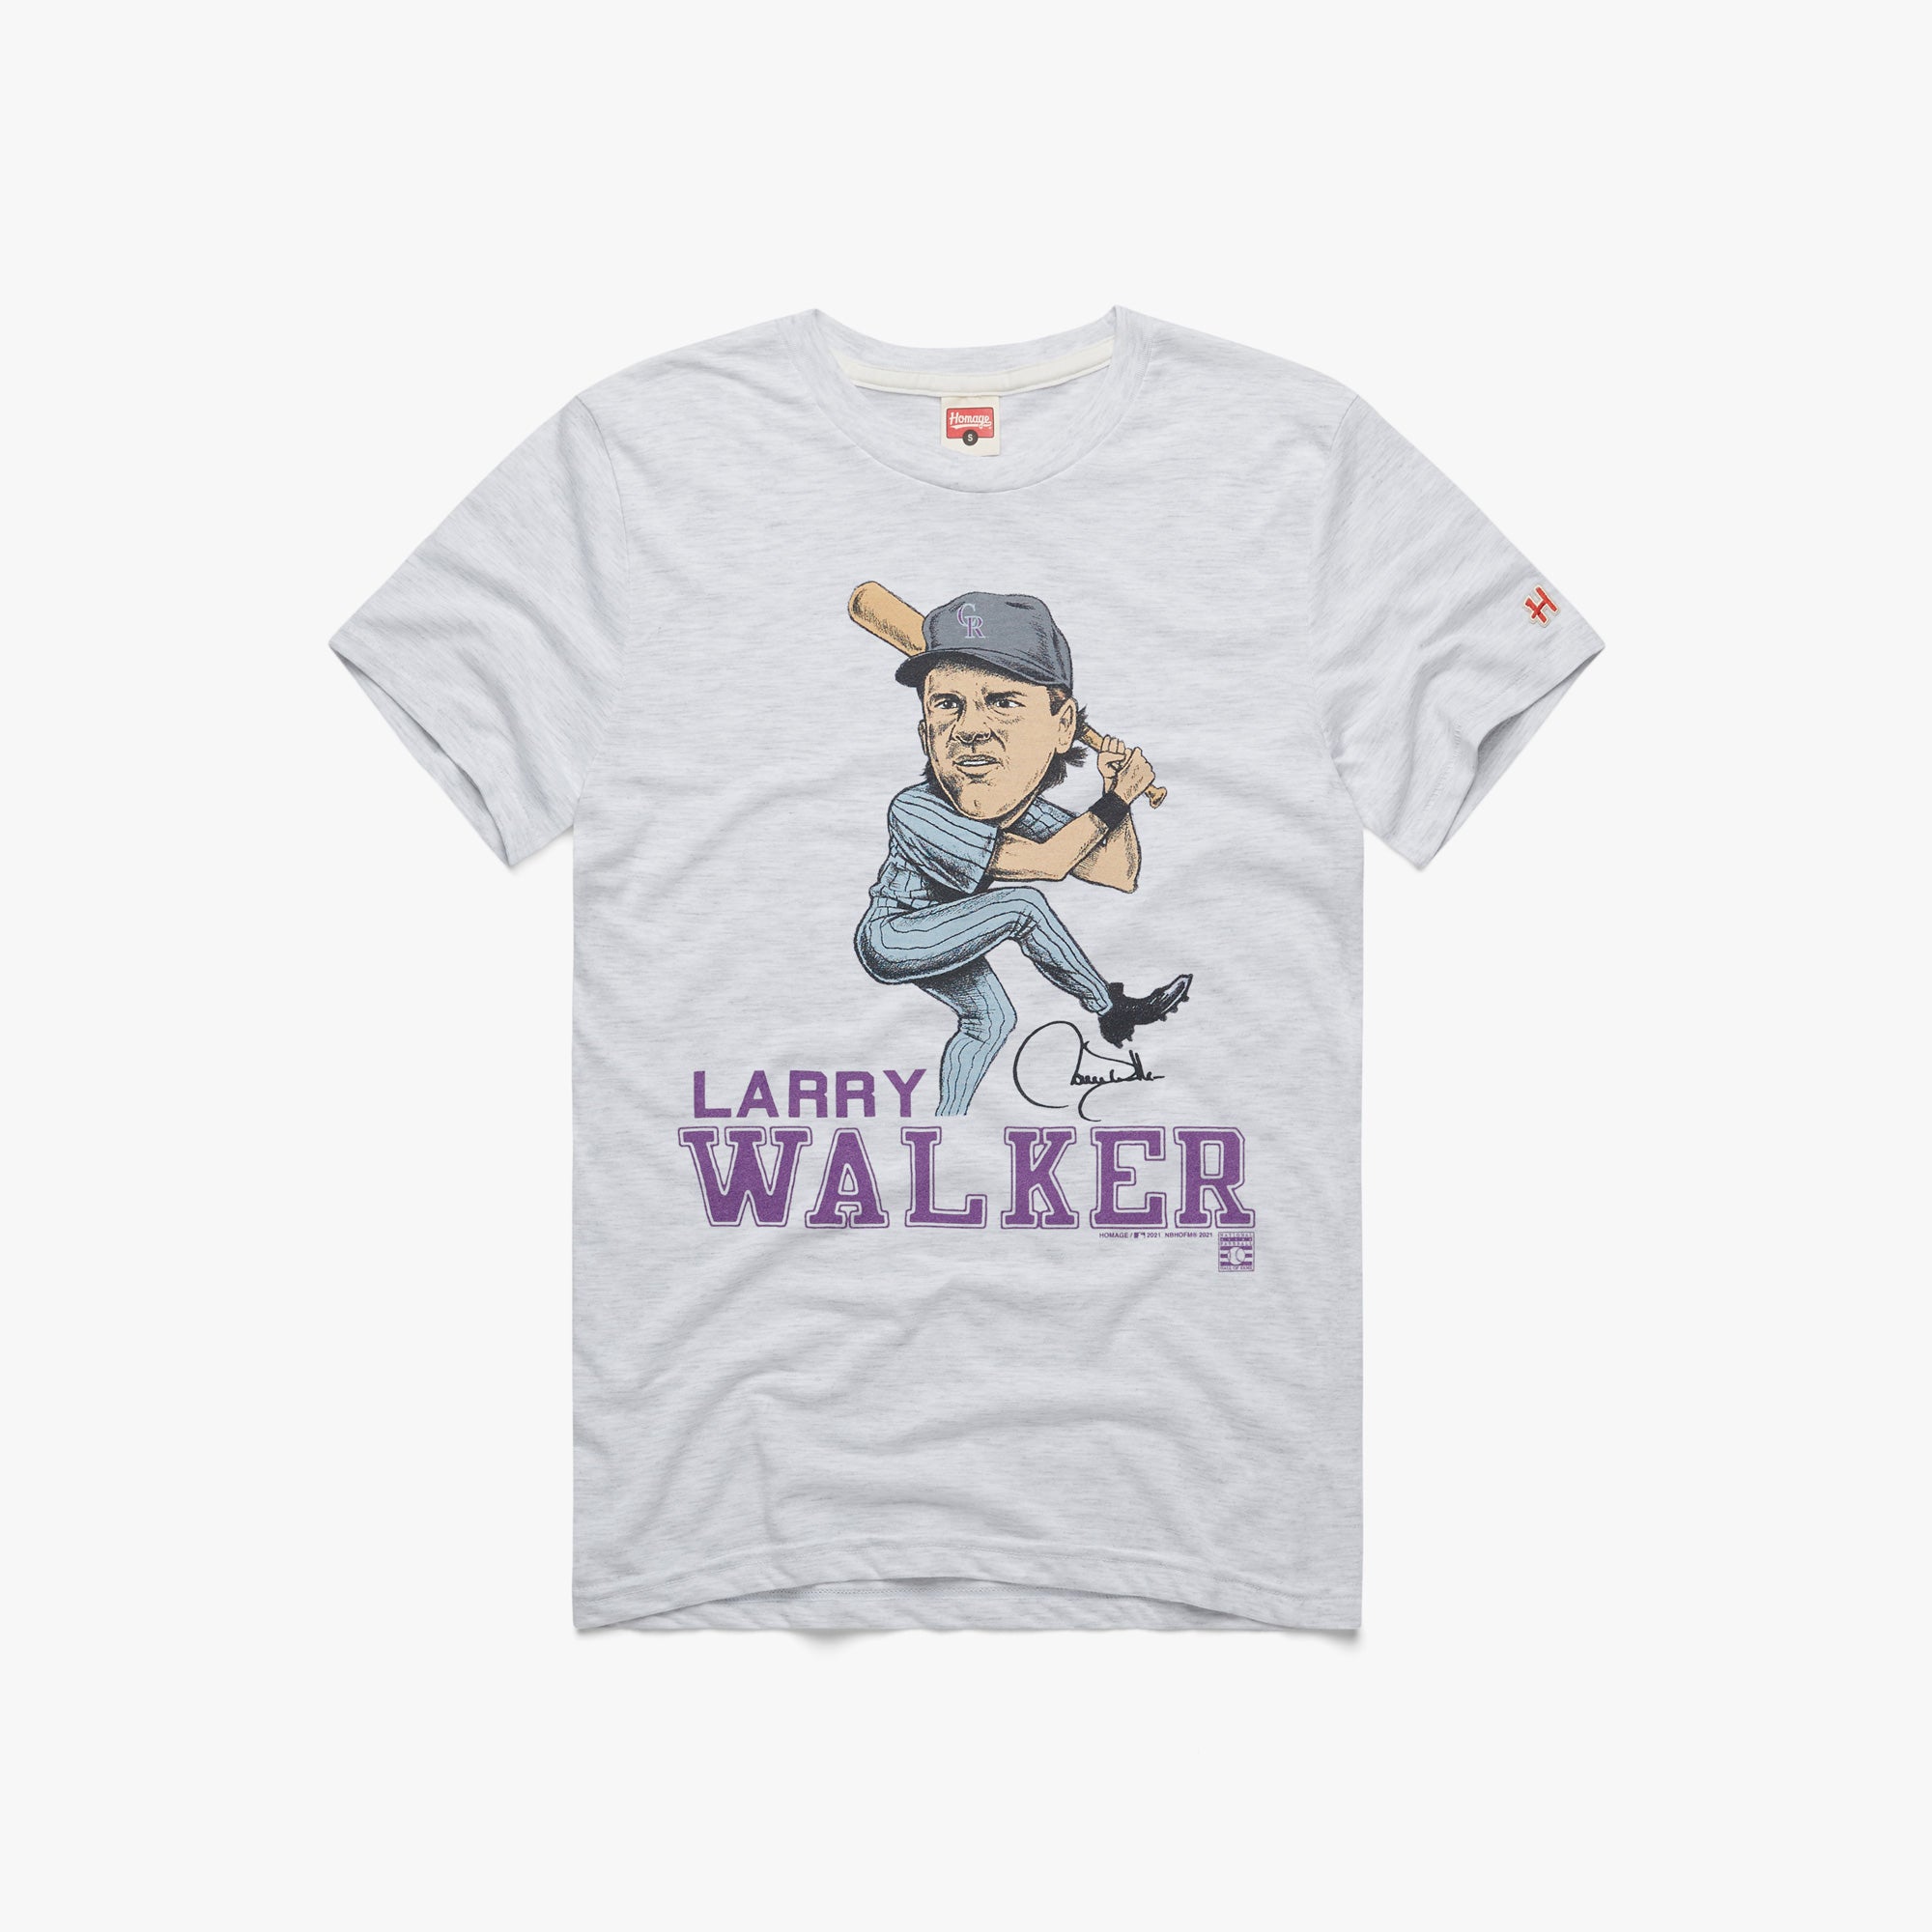 Hall of Famer Larry Walker wears Spongebob shirt